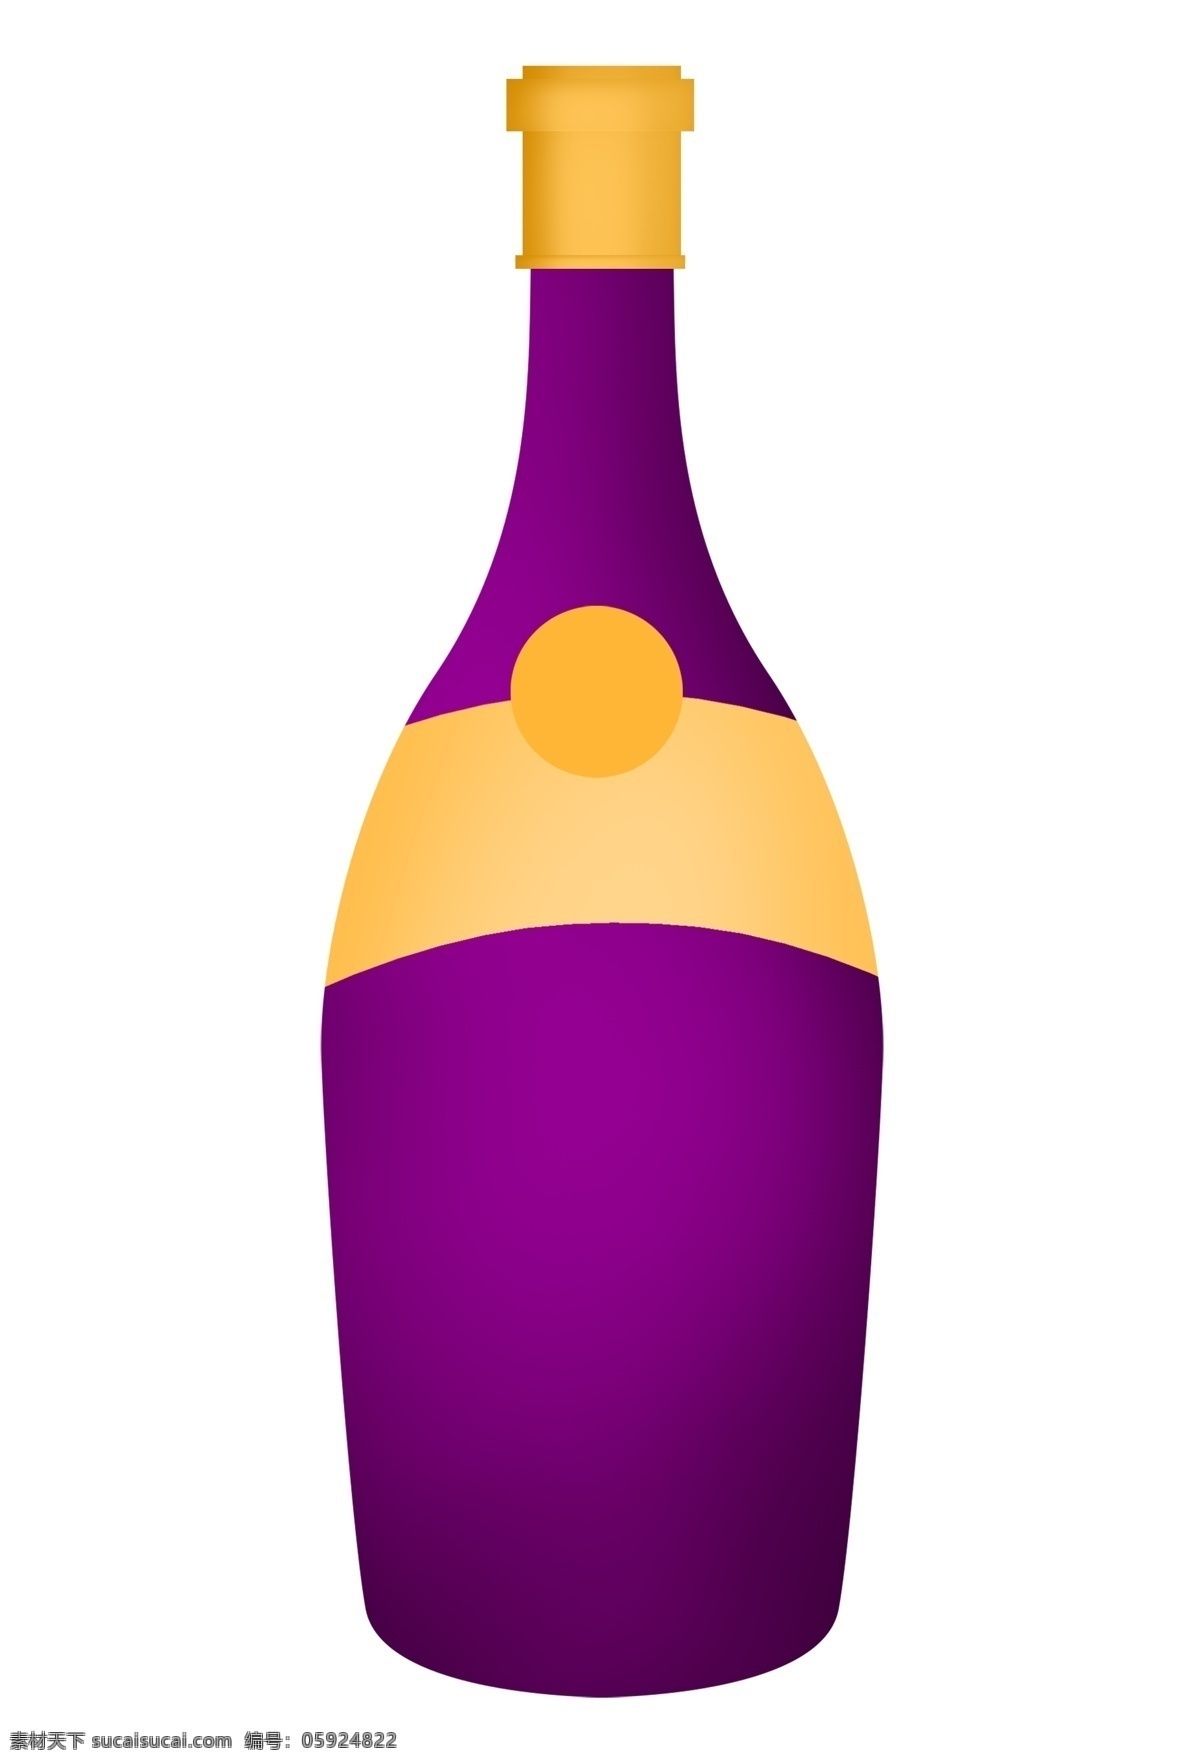 紫色 高档 红酒 瓶 插图 一瓶红酒 紫色瓶子 紫色红酒瓶 高档红酒 酒瓶插图 葡萄酒 一瓶葡萄酒